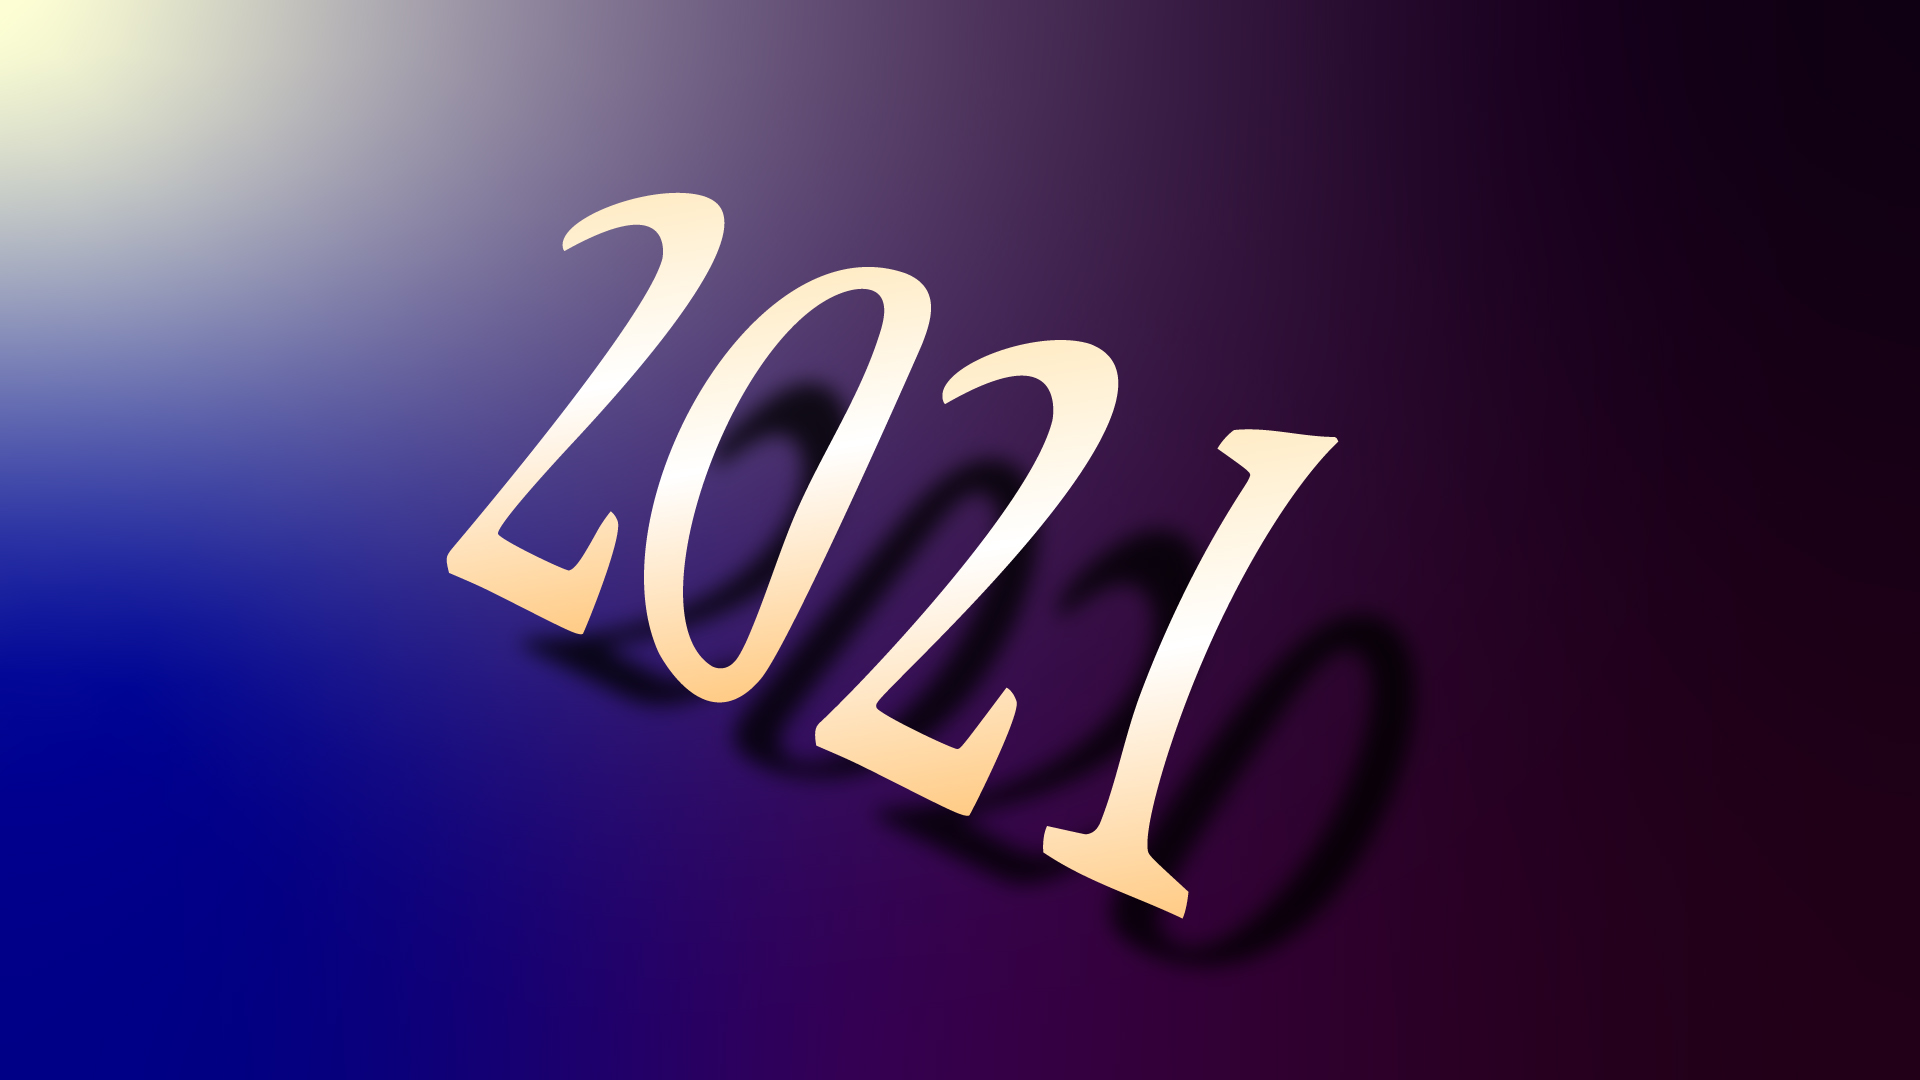 2020年の振り返りと2021年に向けての展望について。年末年始のご挨拶。